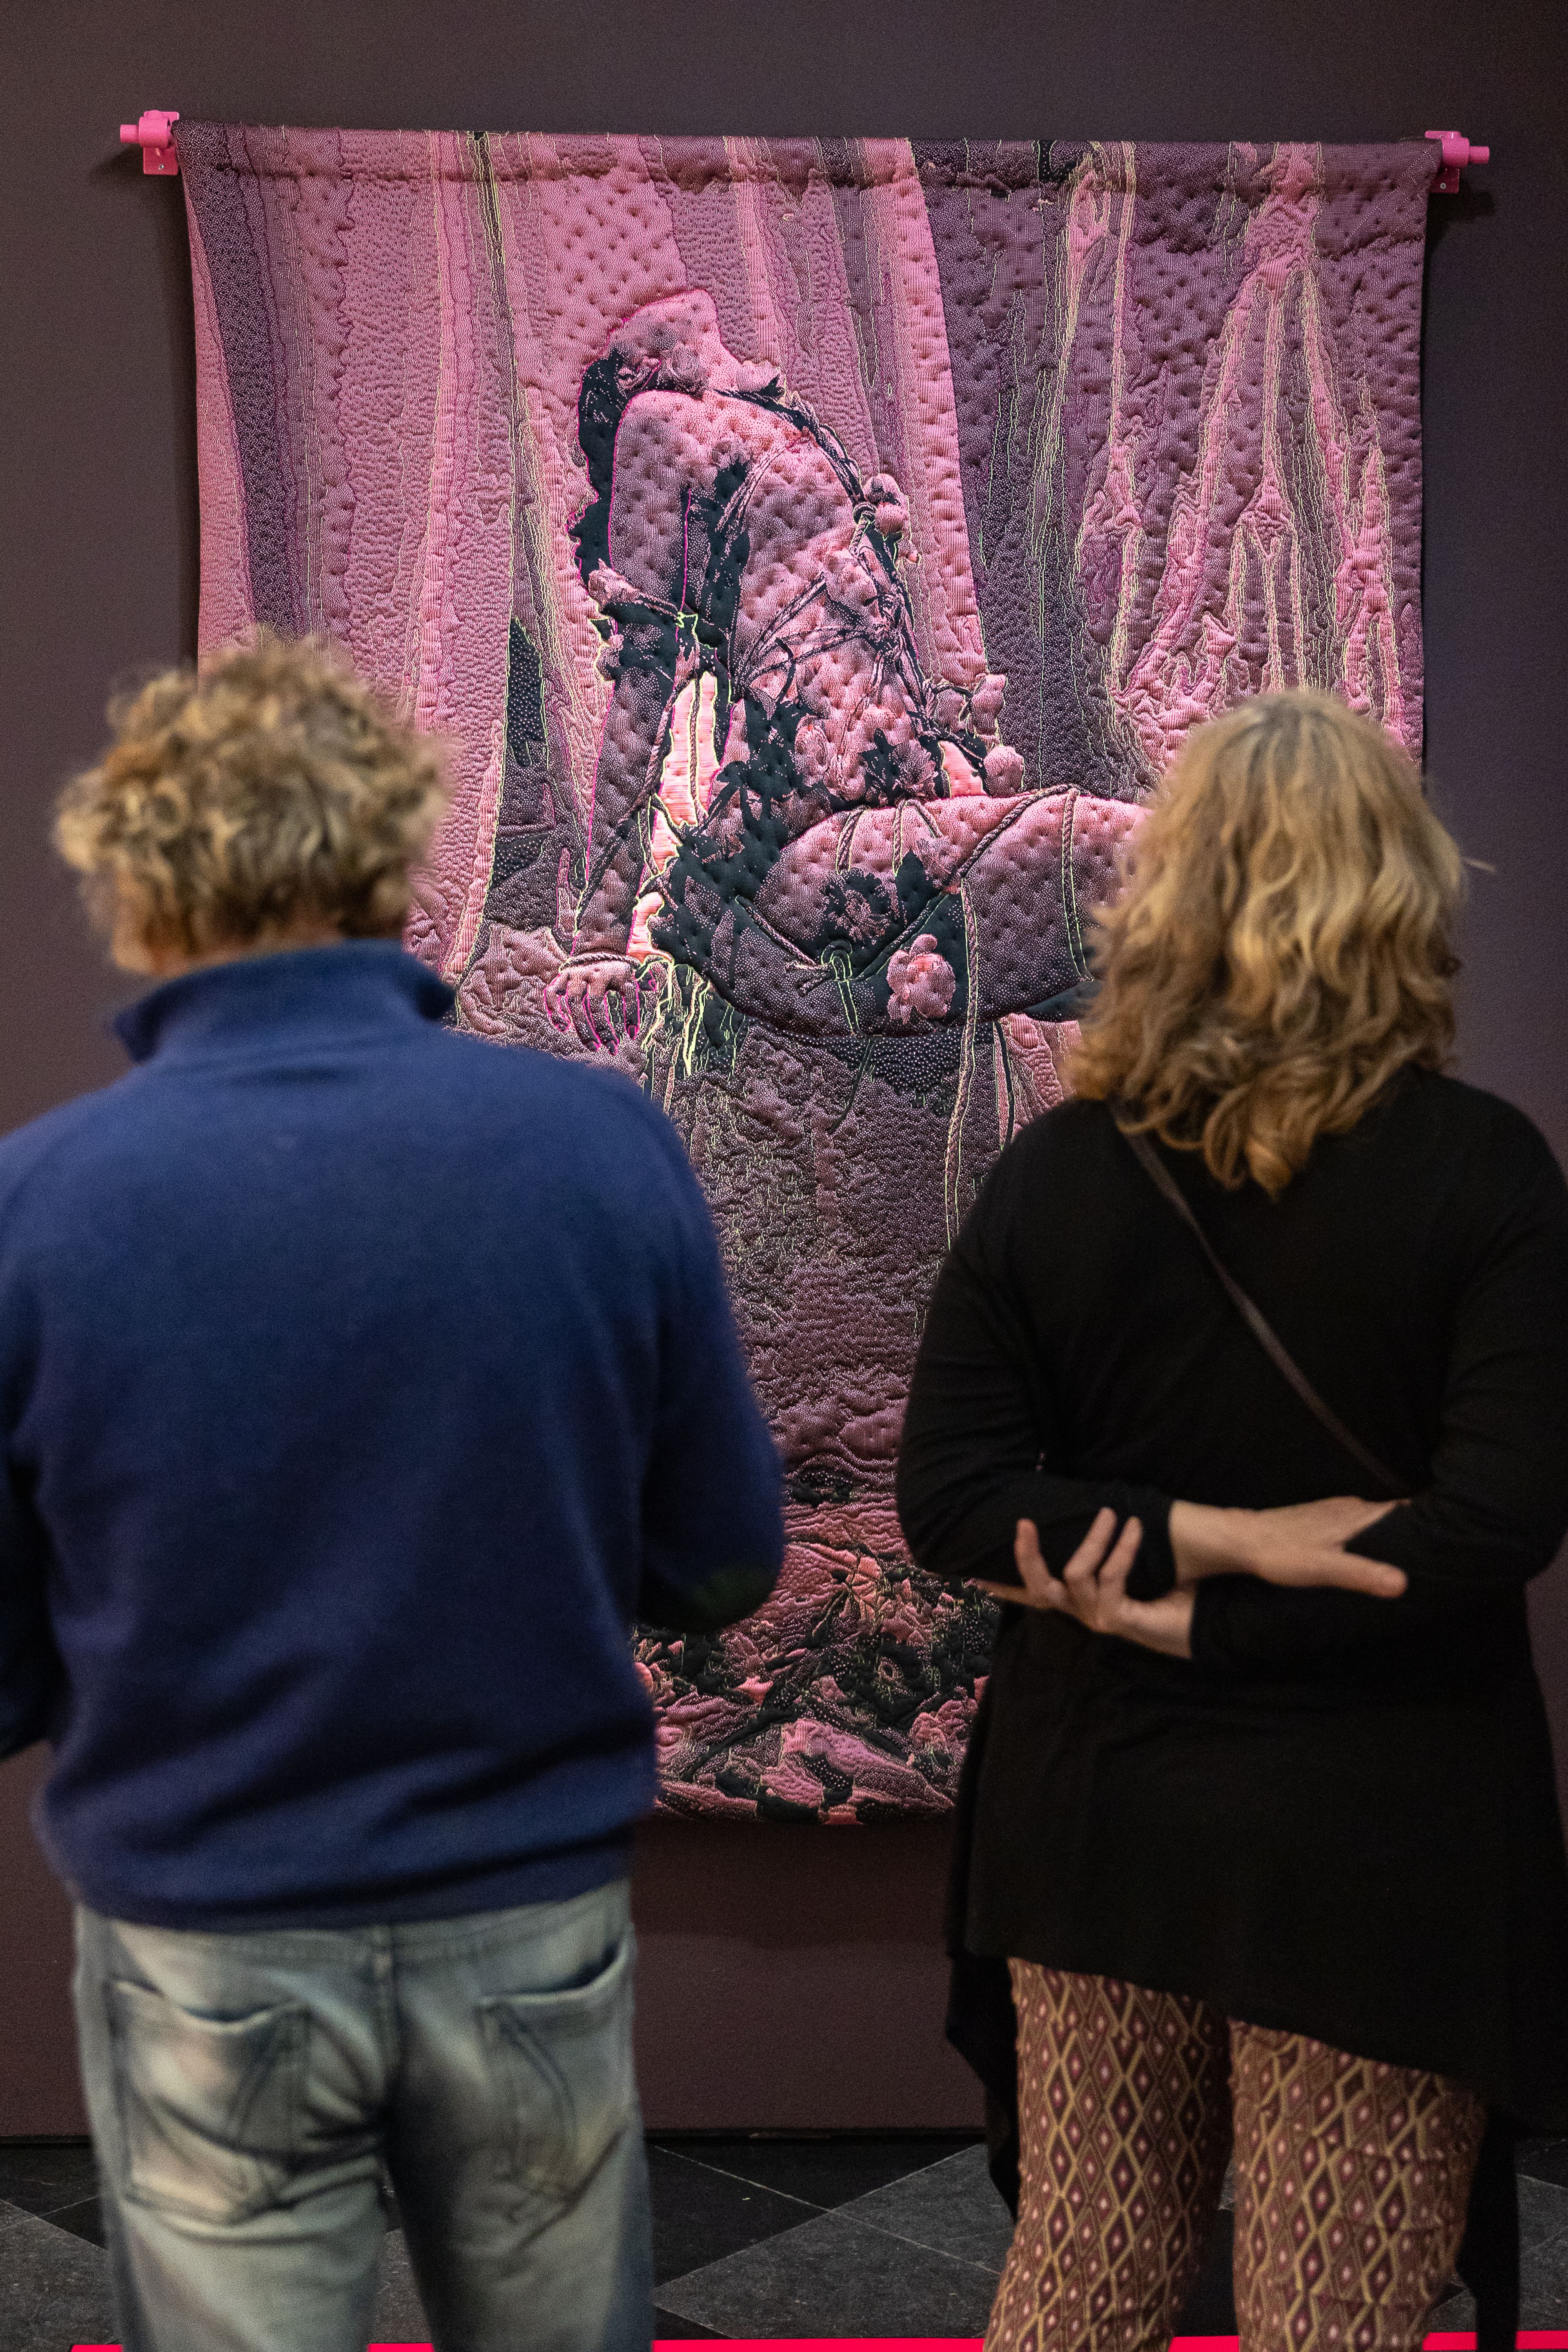 Bezoekers bekijken het kunstwerk aan de muur van Yamuna Forzani tijdens de tentoonstelling The Art of Drag in HAL.